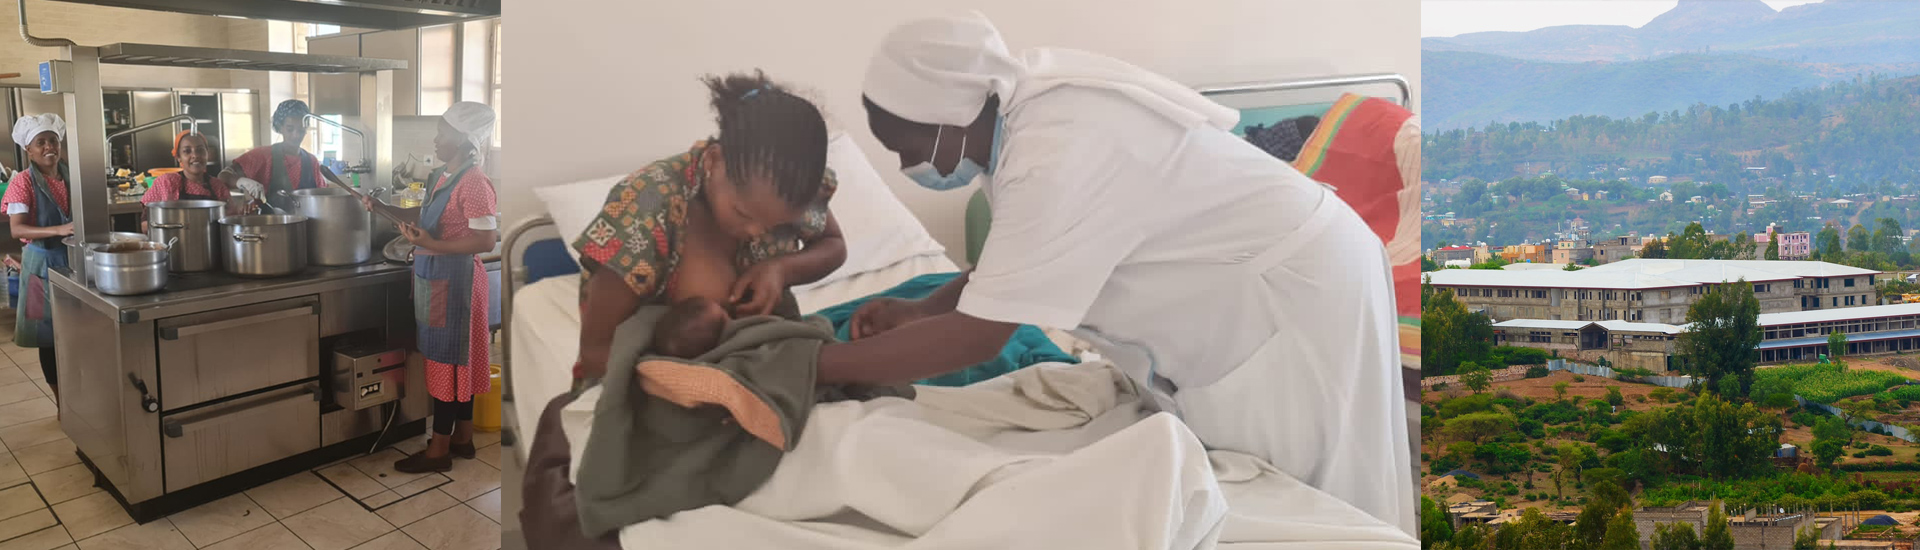 Comida y atención sanitaria para los afectados por la guerra en Etiopía